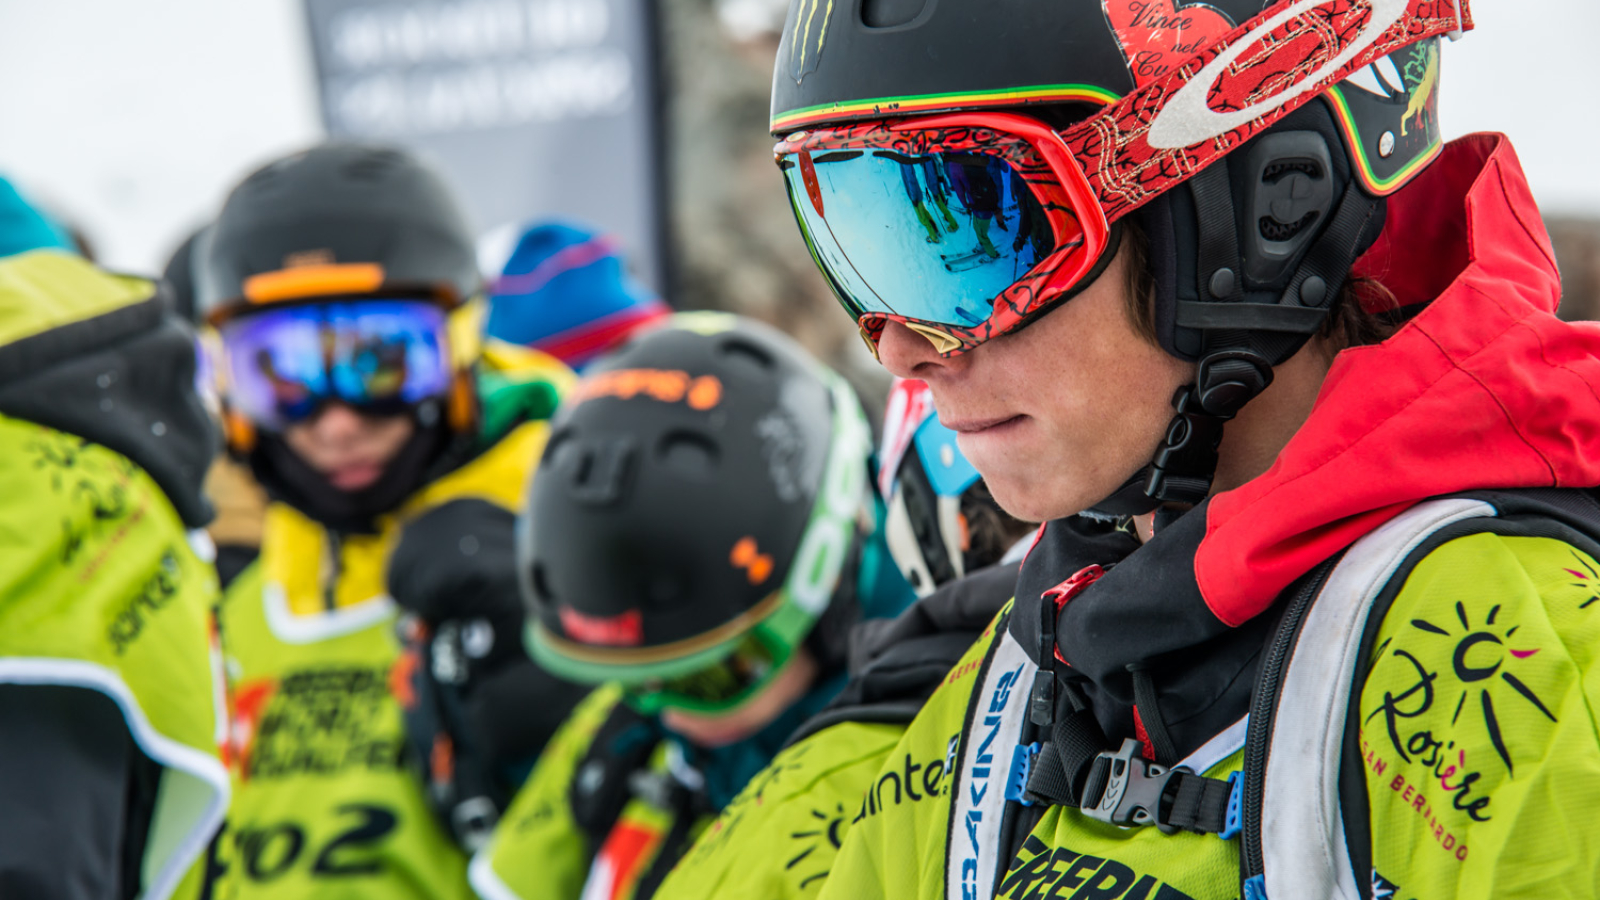 Stages de ski spécial adolescents. Le domaine de ski de La Rosière propose une variété de pistes pour tous niveaux de pratique. Ambiance décontractée pour un ski fun.